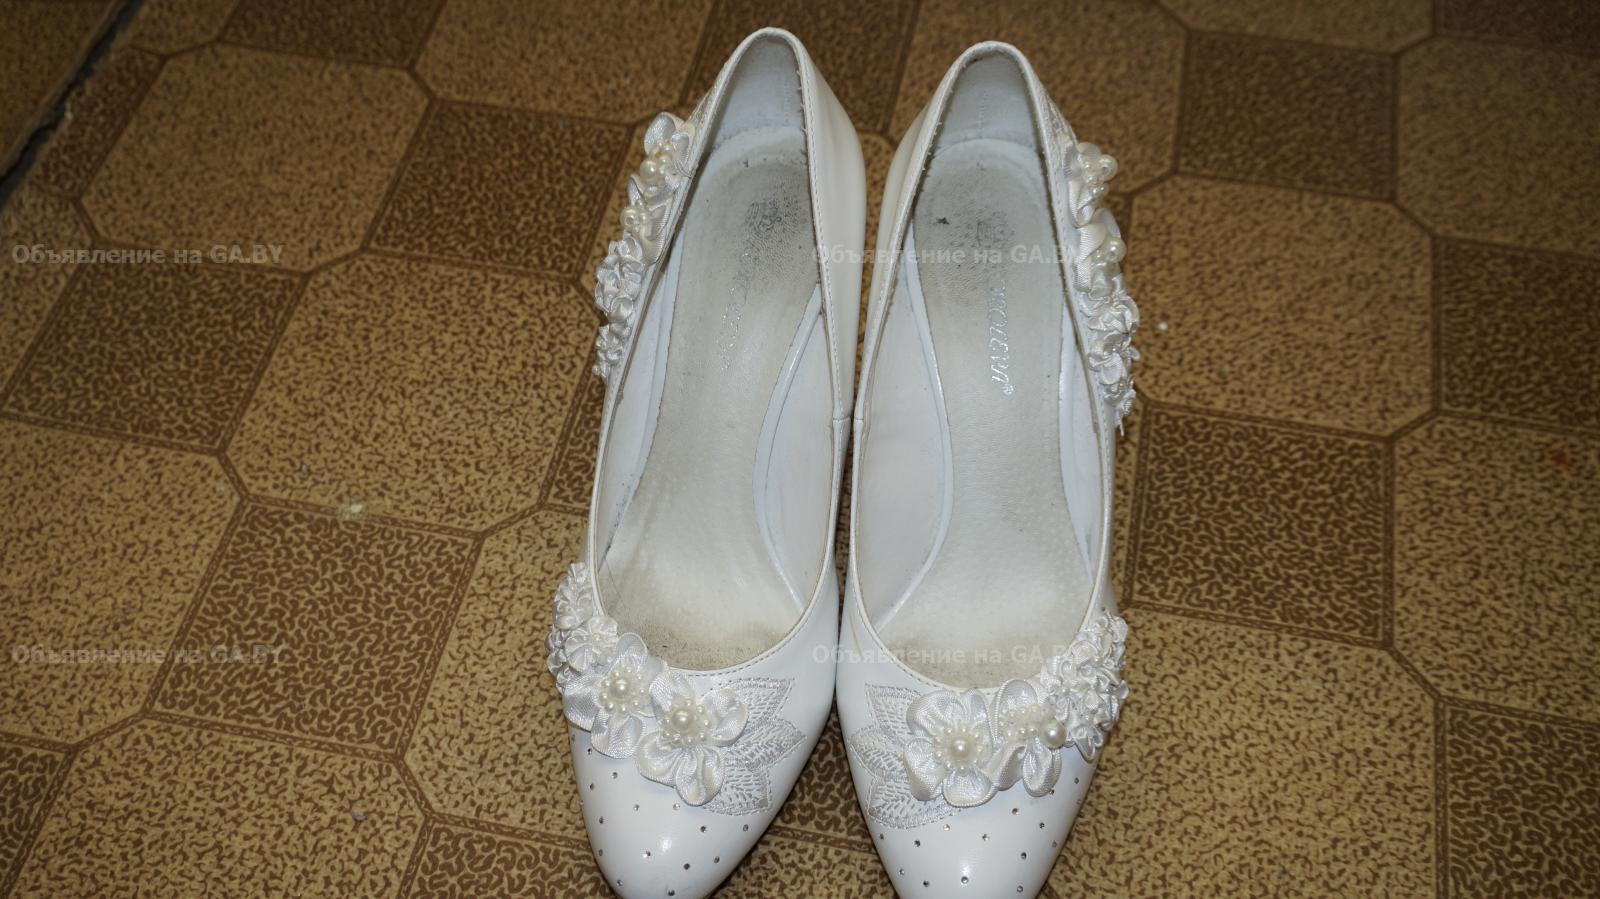 Продам Свадебные туфли - GA.BY